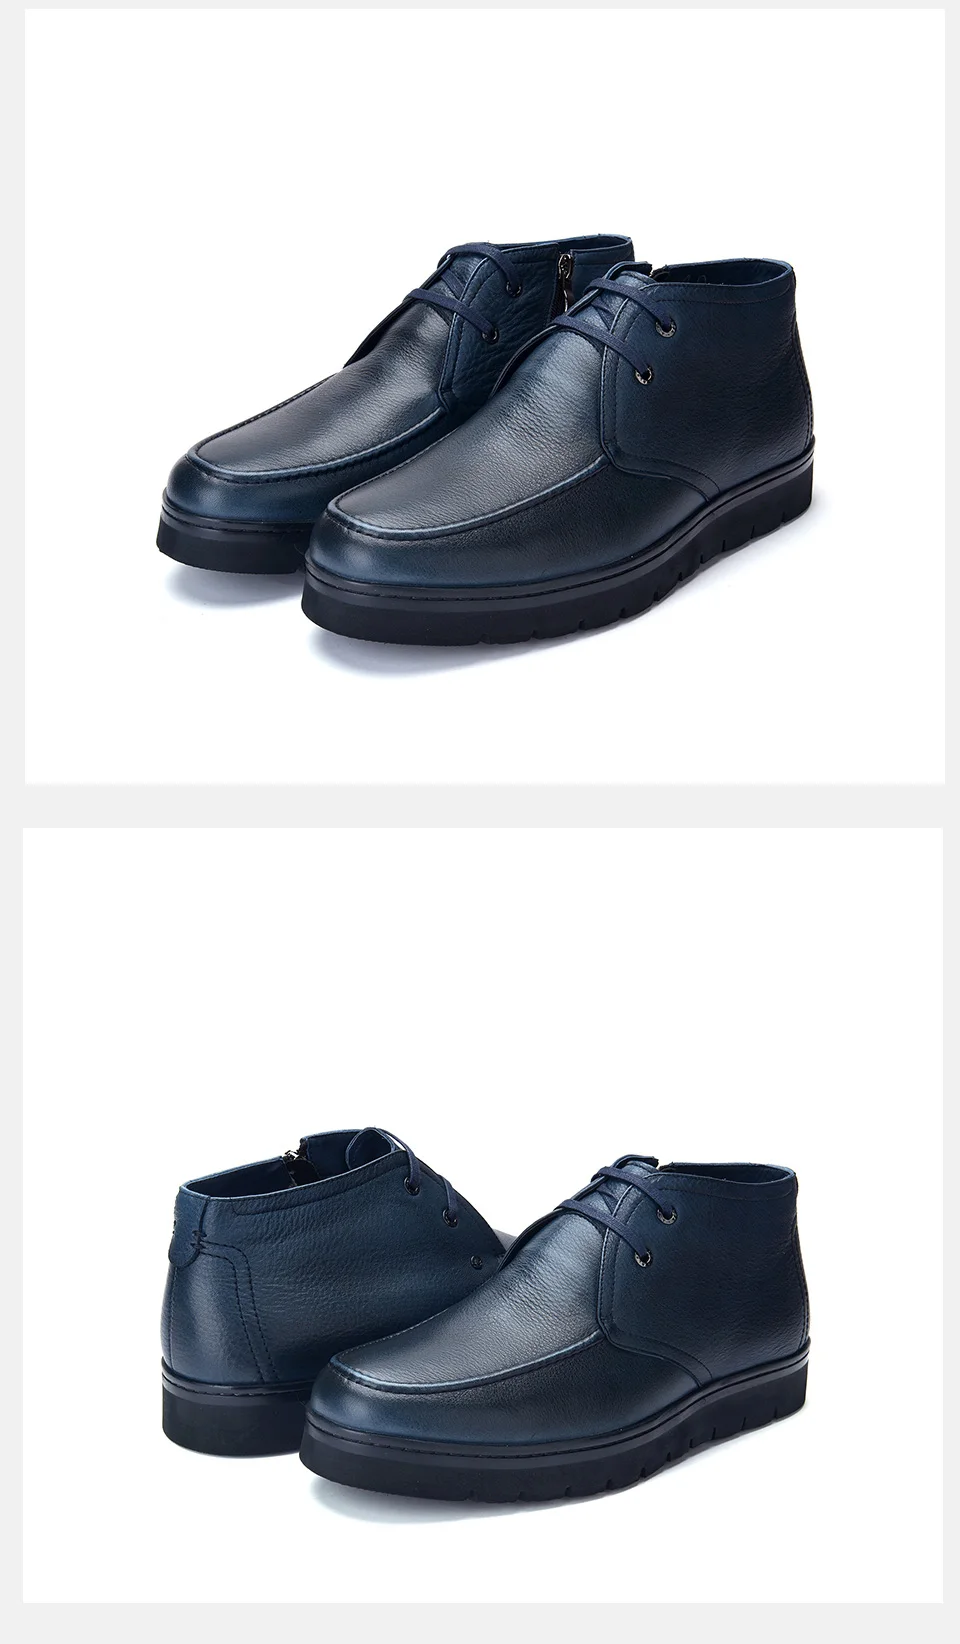 Jackmiller/Брендовые мужские кожаные ботинки темно-синего цвета на шнуровке, с боковой молнией, на толстой подошве, с шерстяной подкладкой; базовые мужские ботинки; Зимние Теплые ботильоны